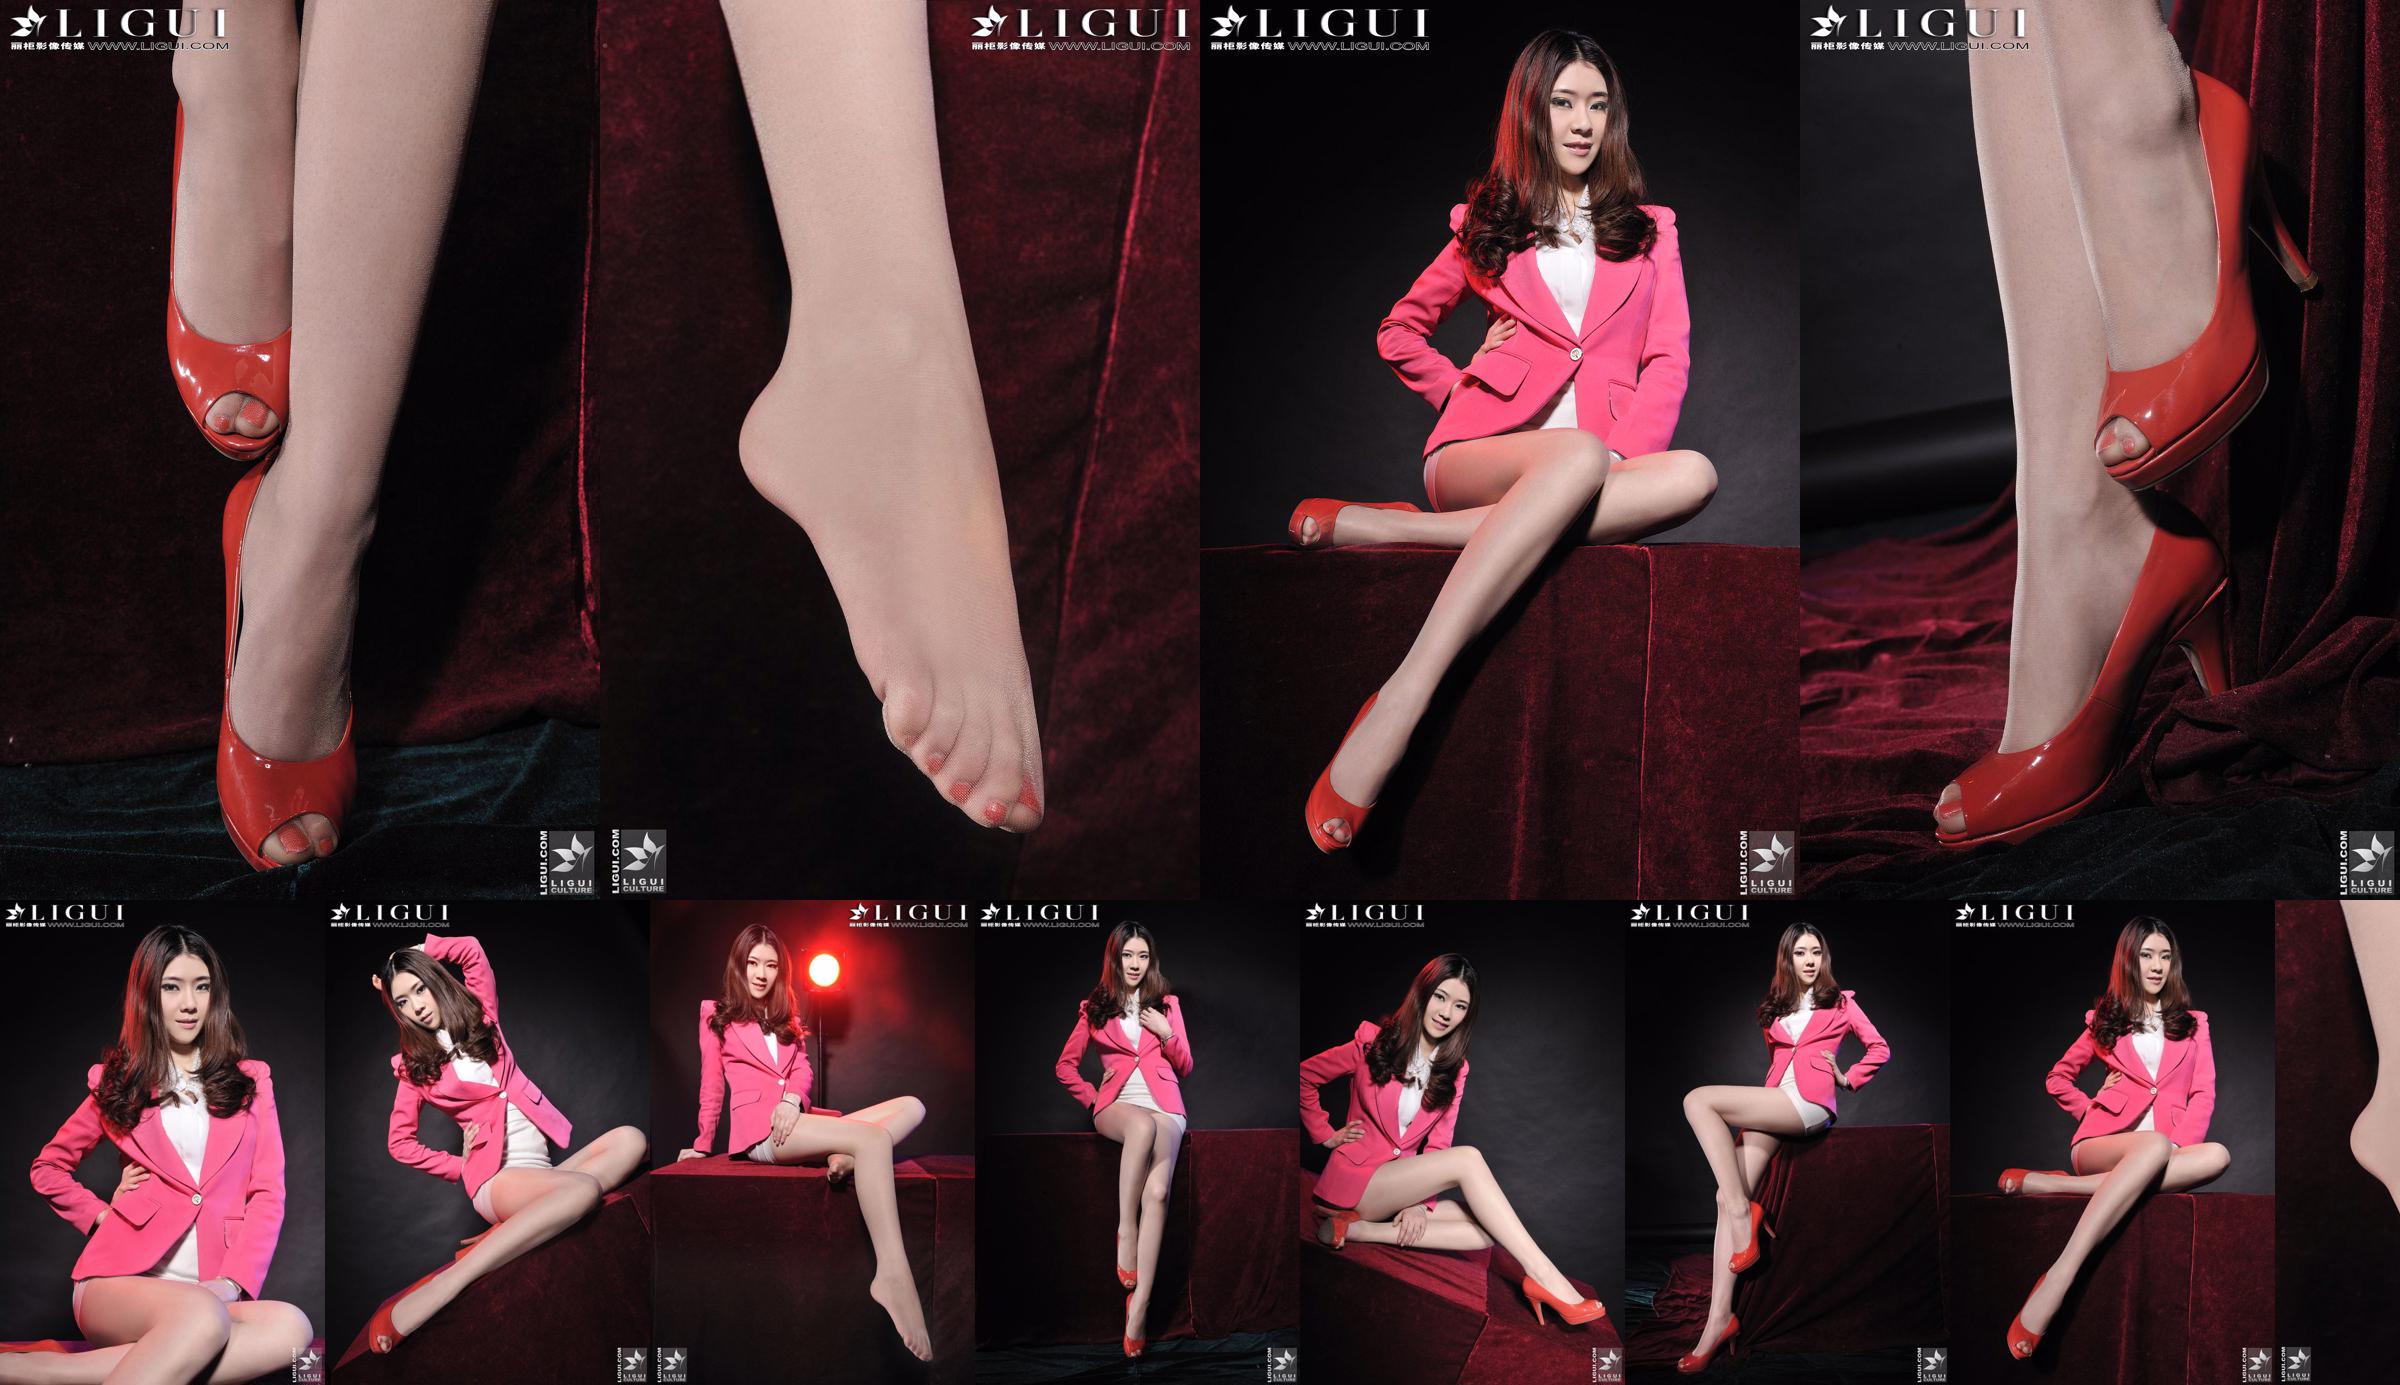 モデルチェンチェン「赤いハイヒールガール」[丽柜LiGui]美しい脚と翡翠の足の写真写真 No.3cab6e ページ1